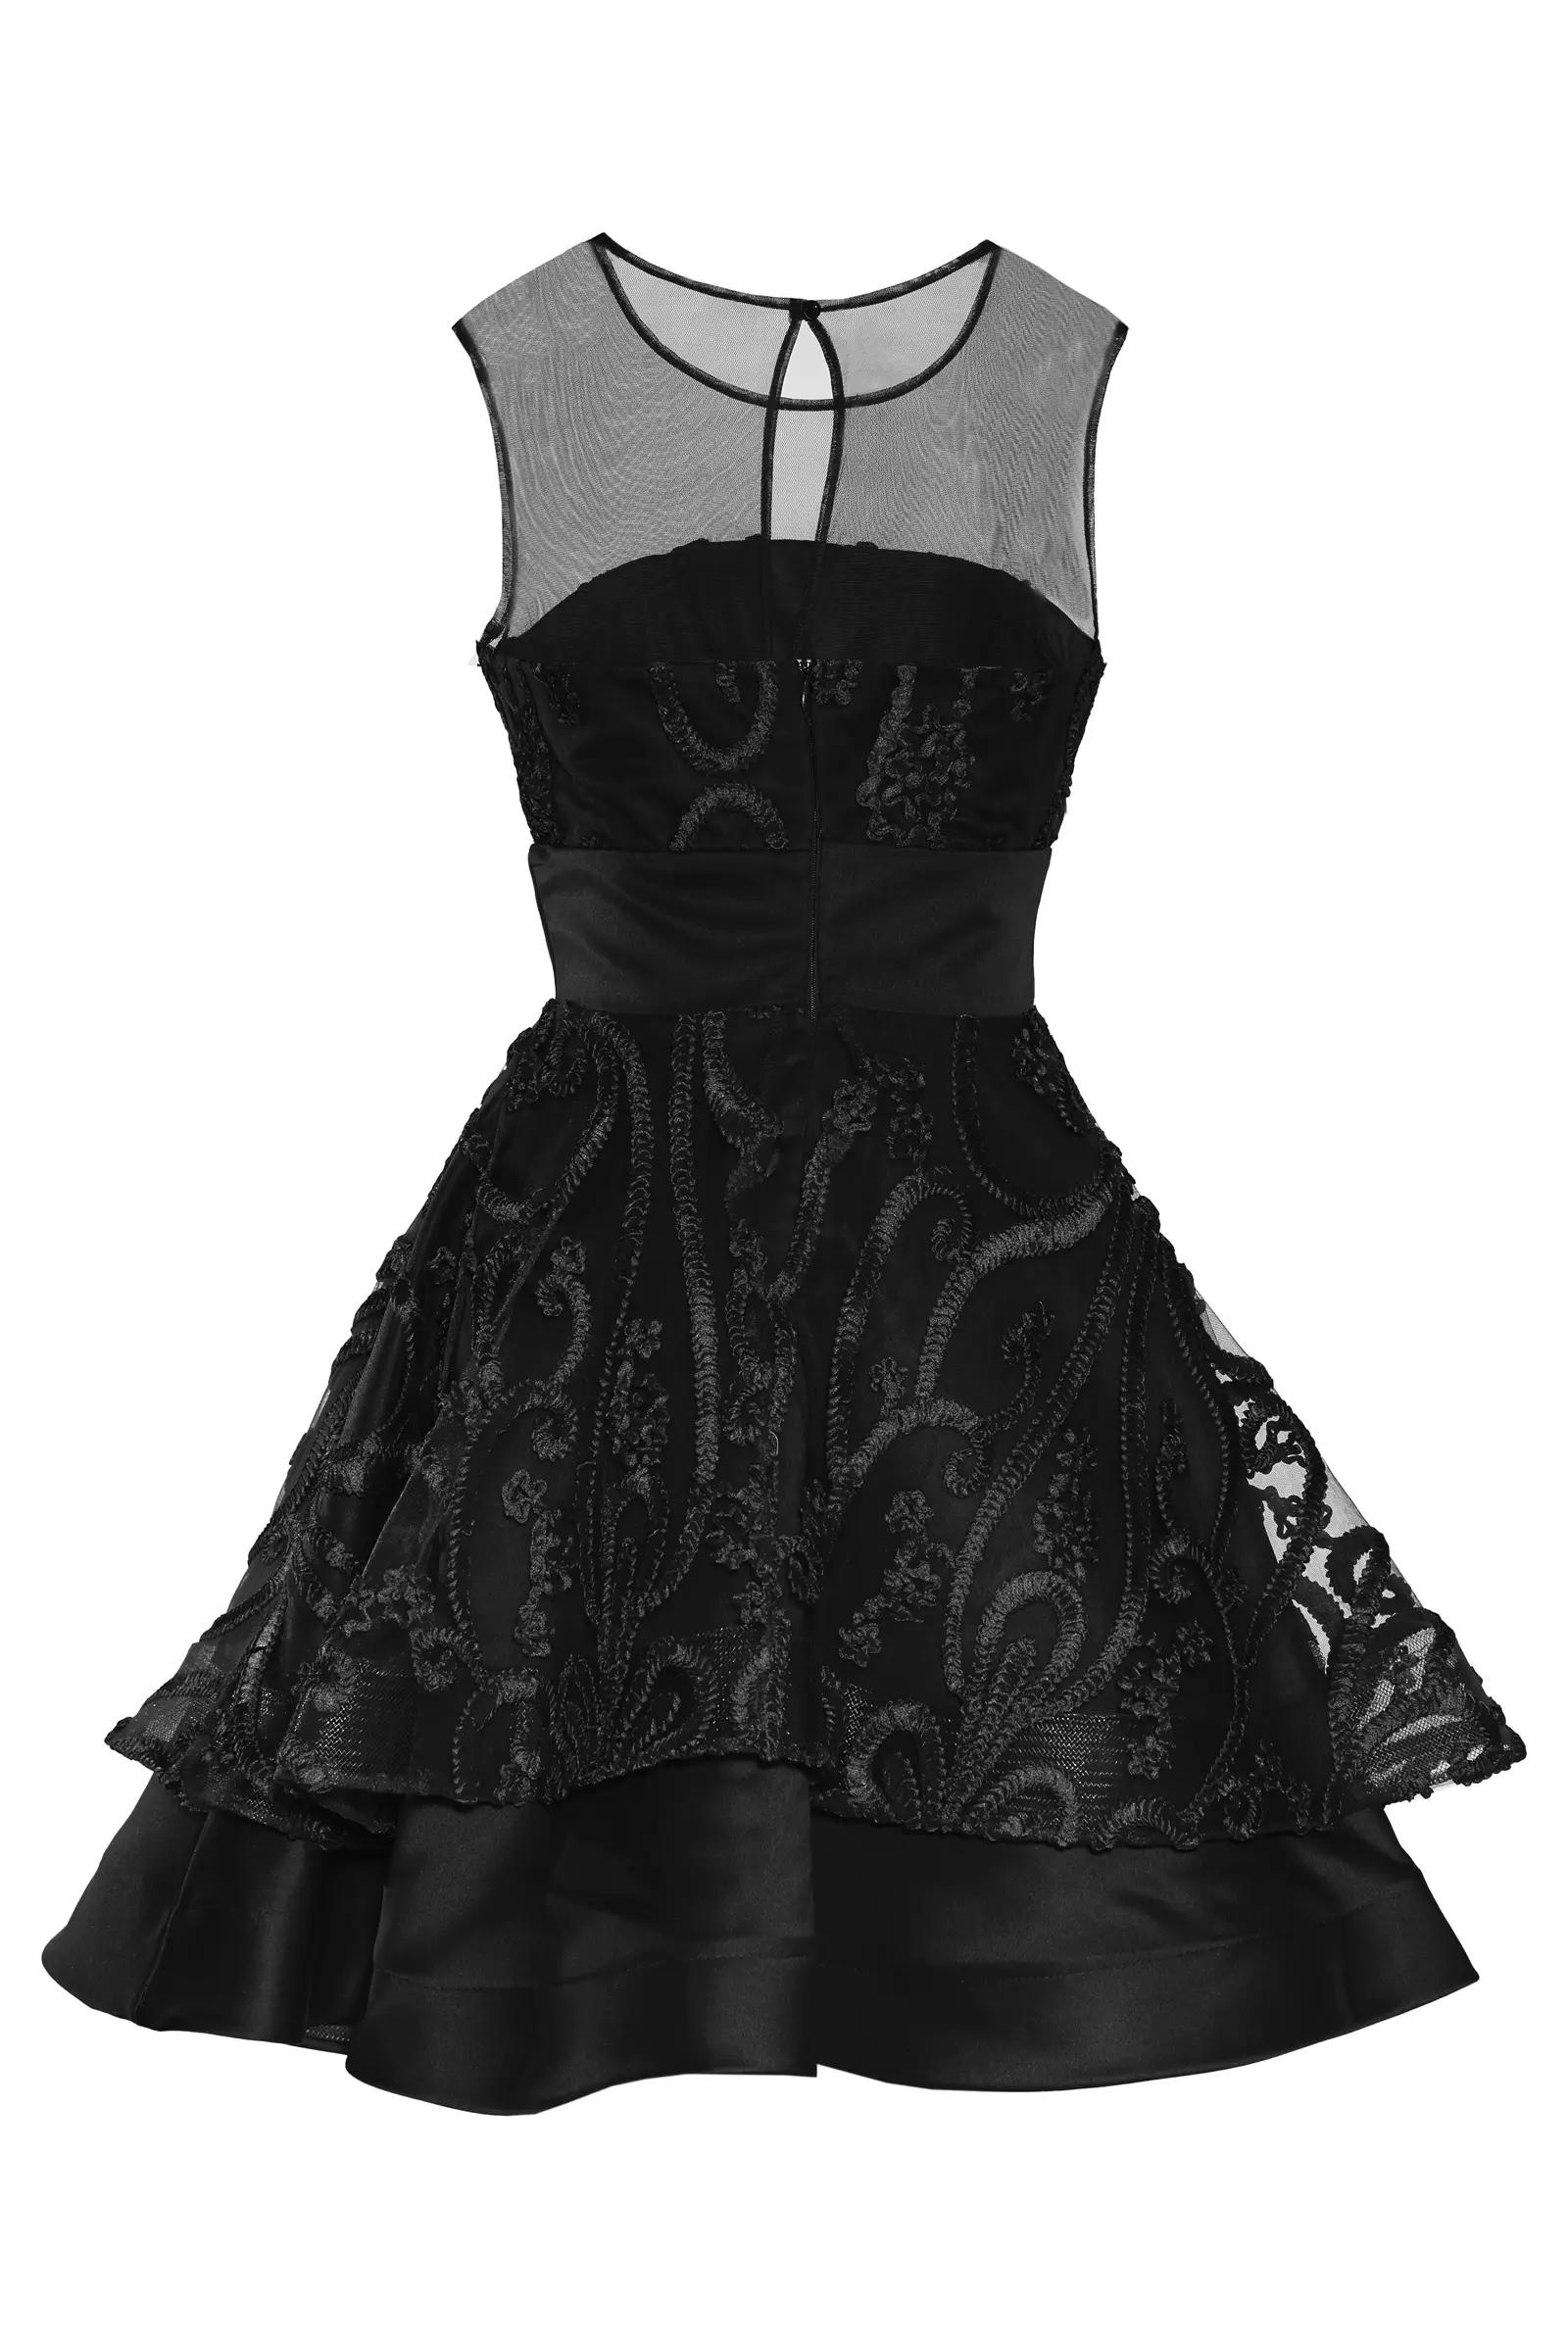 Black Lace Sleeveless Mini Dress